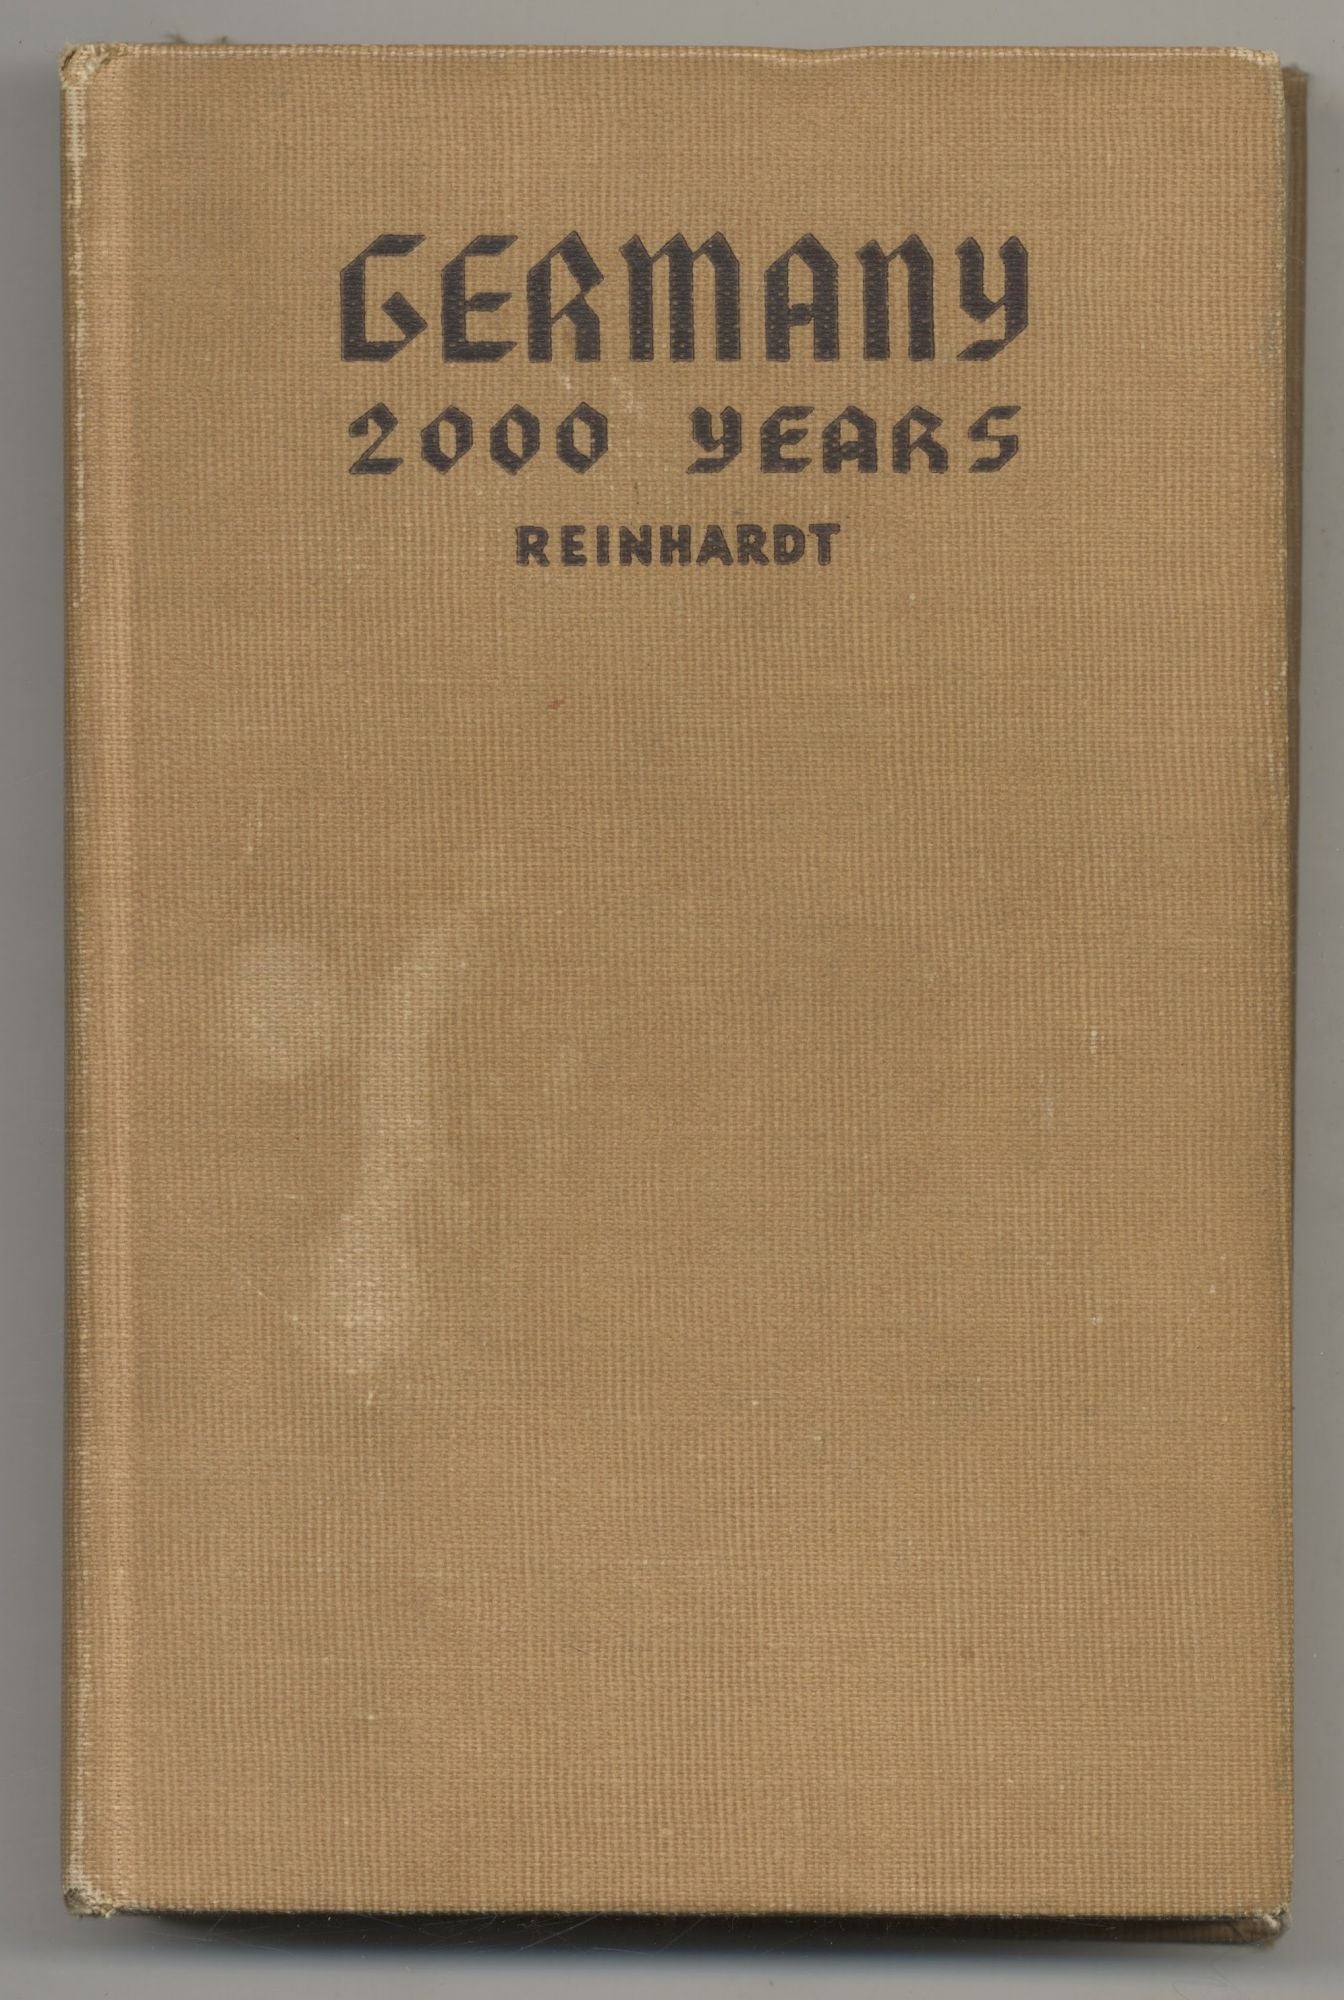 Book #27450 Germany 2000 Years. Kurt F. Reinhardt.